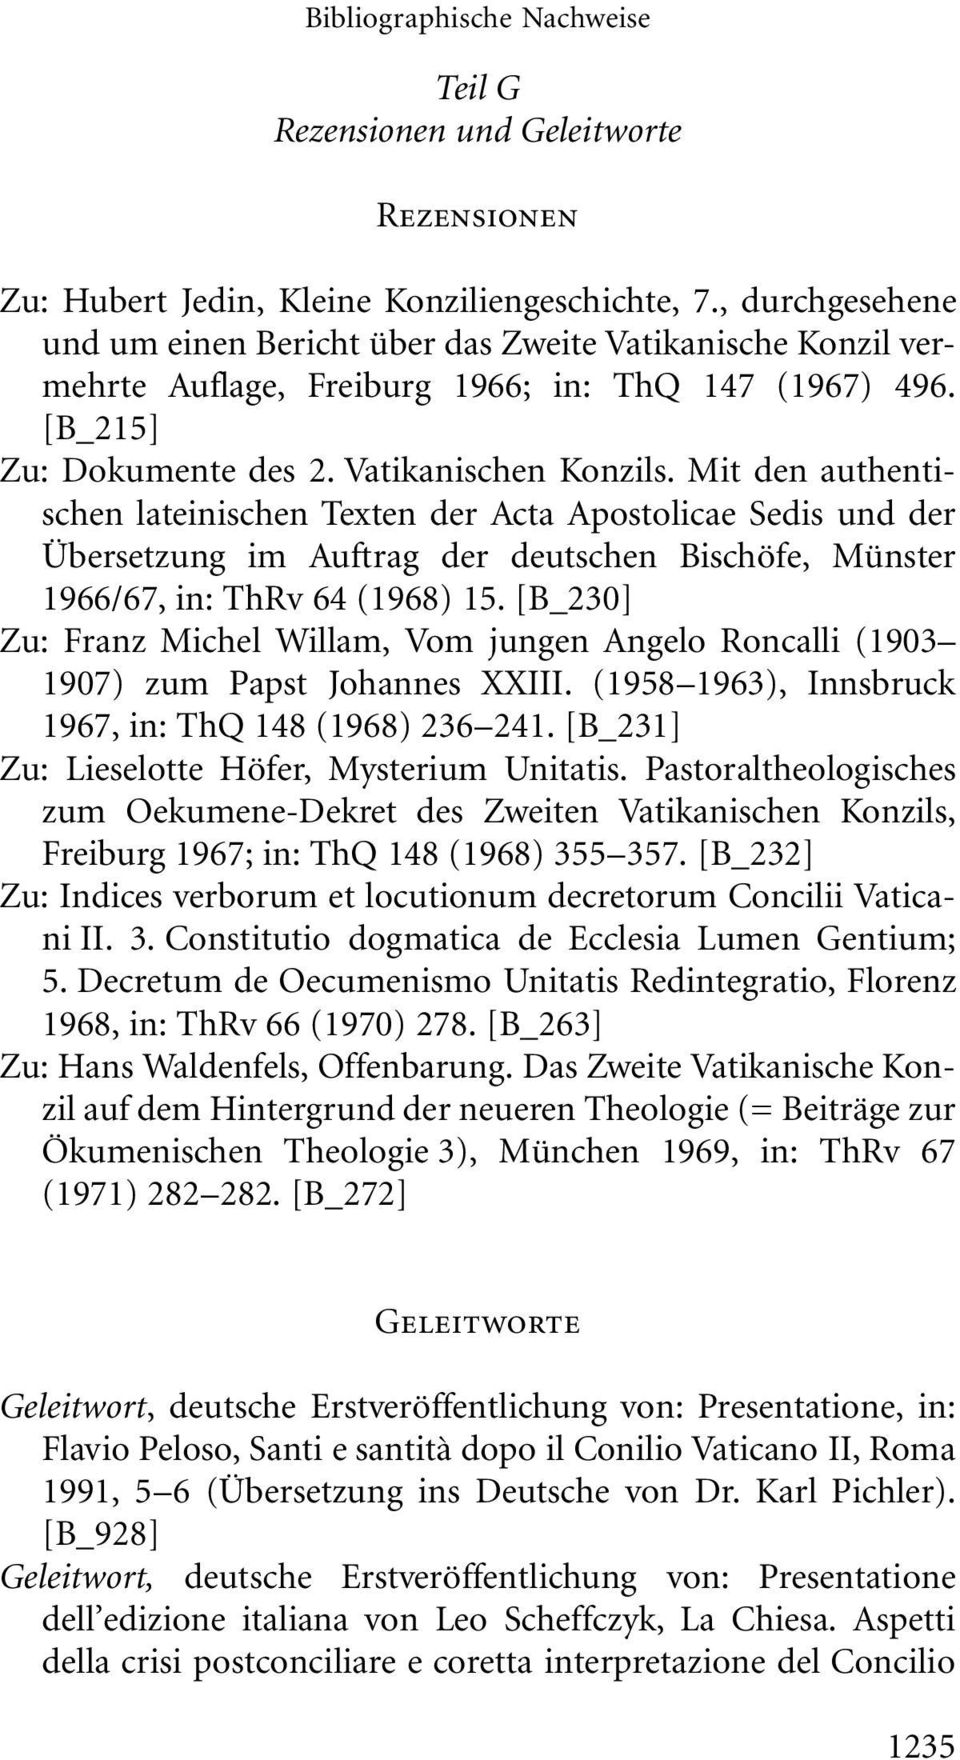 Mit den authentischen lateinischen Texten der Acta Apostolicae Sedis und der Übersetzung im Auftrag der deutschen Bischöfe, Münster 1966/67, in: ThRv 64 (1968) 15.